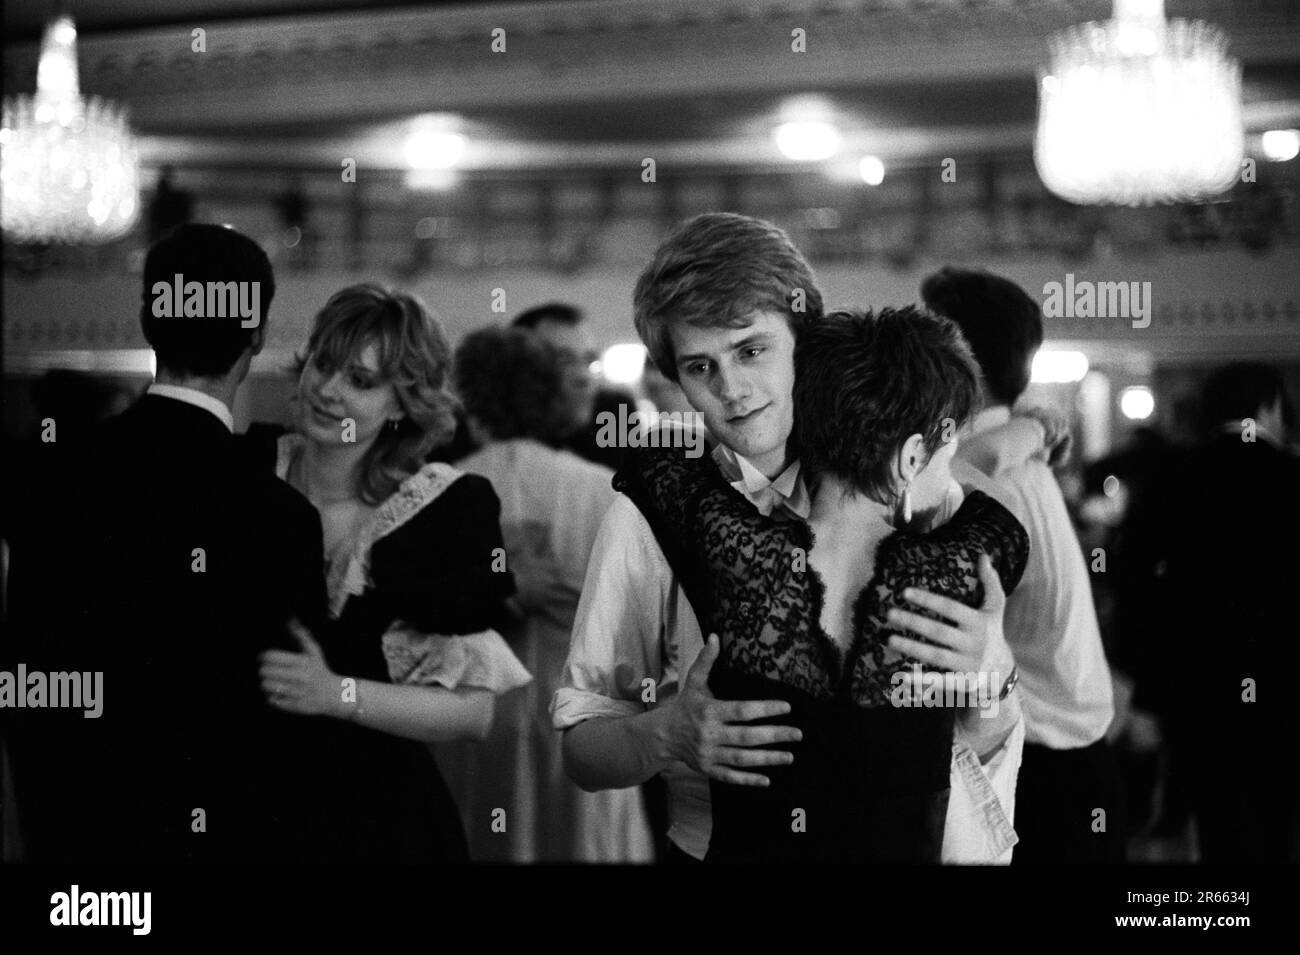 Un jeune couple riche de Sloane Rangers se présente sur la piste de danse à l'œuvre caritative annuelle Rose ball, qui s'est tenue dans le Grosvenor House Hotel, Park Lane. Mayfair, Londres, Angleterre vers mai 1982. 1980S ROYAUME-UNI HOMER SYKES Banque D'Images